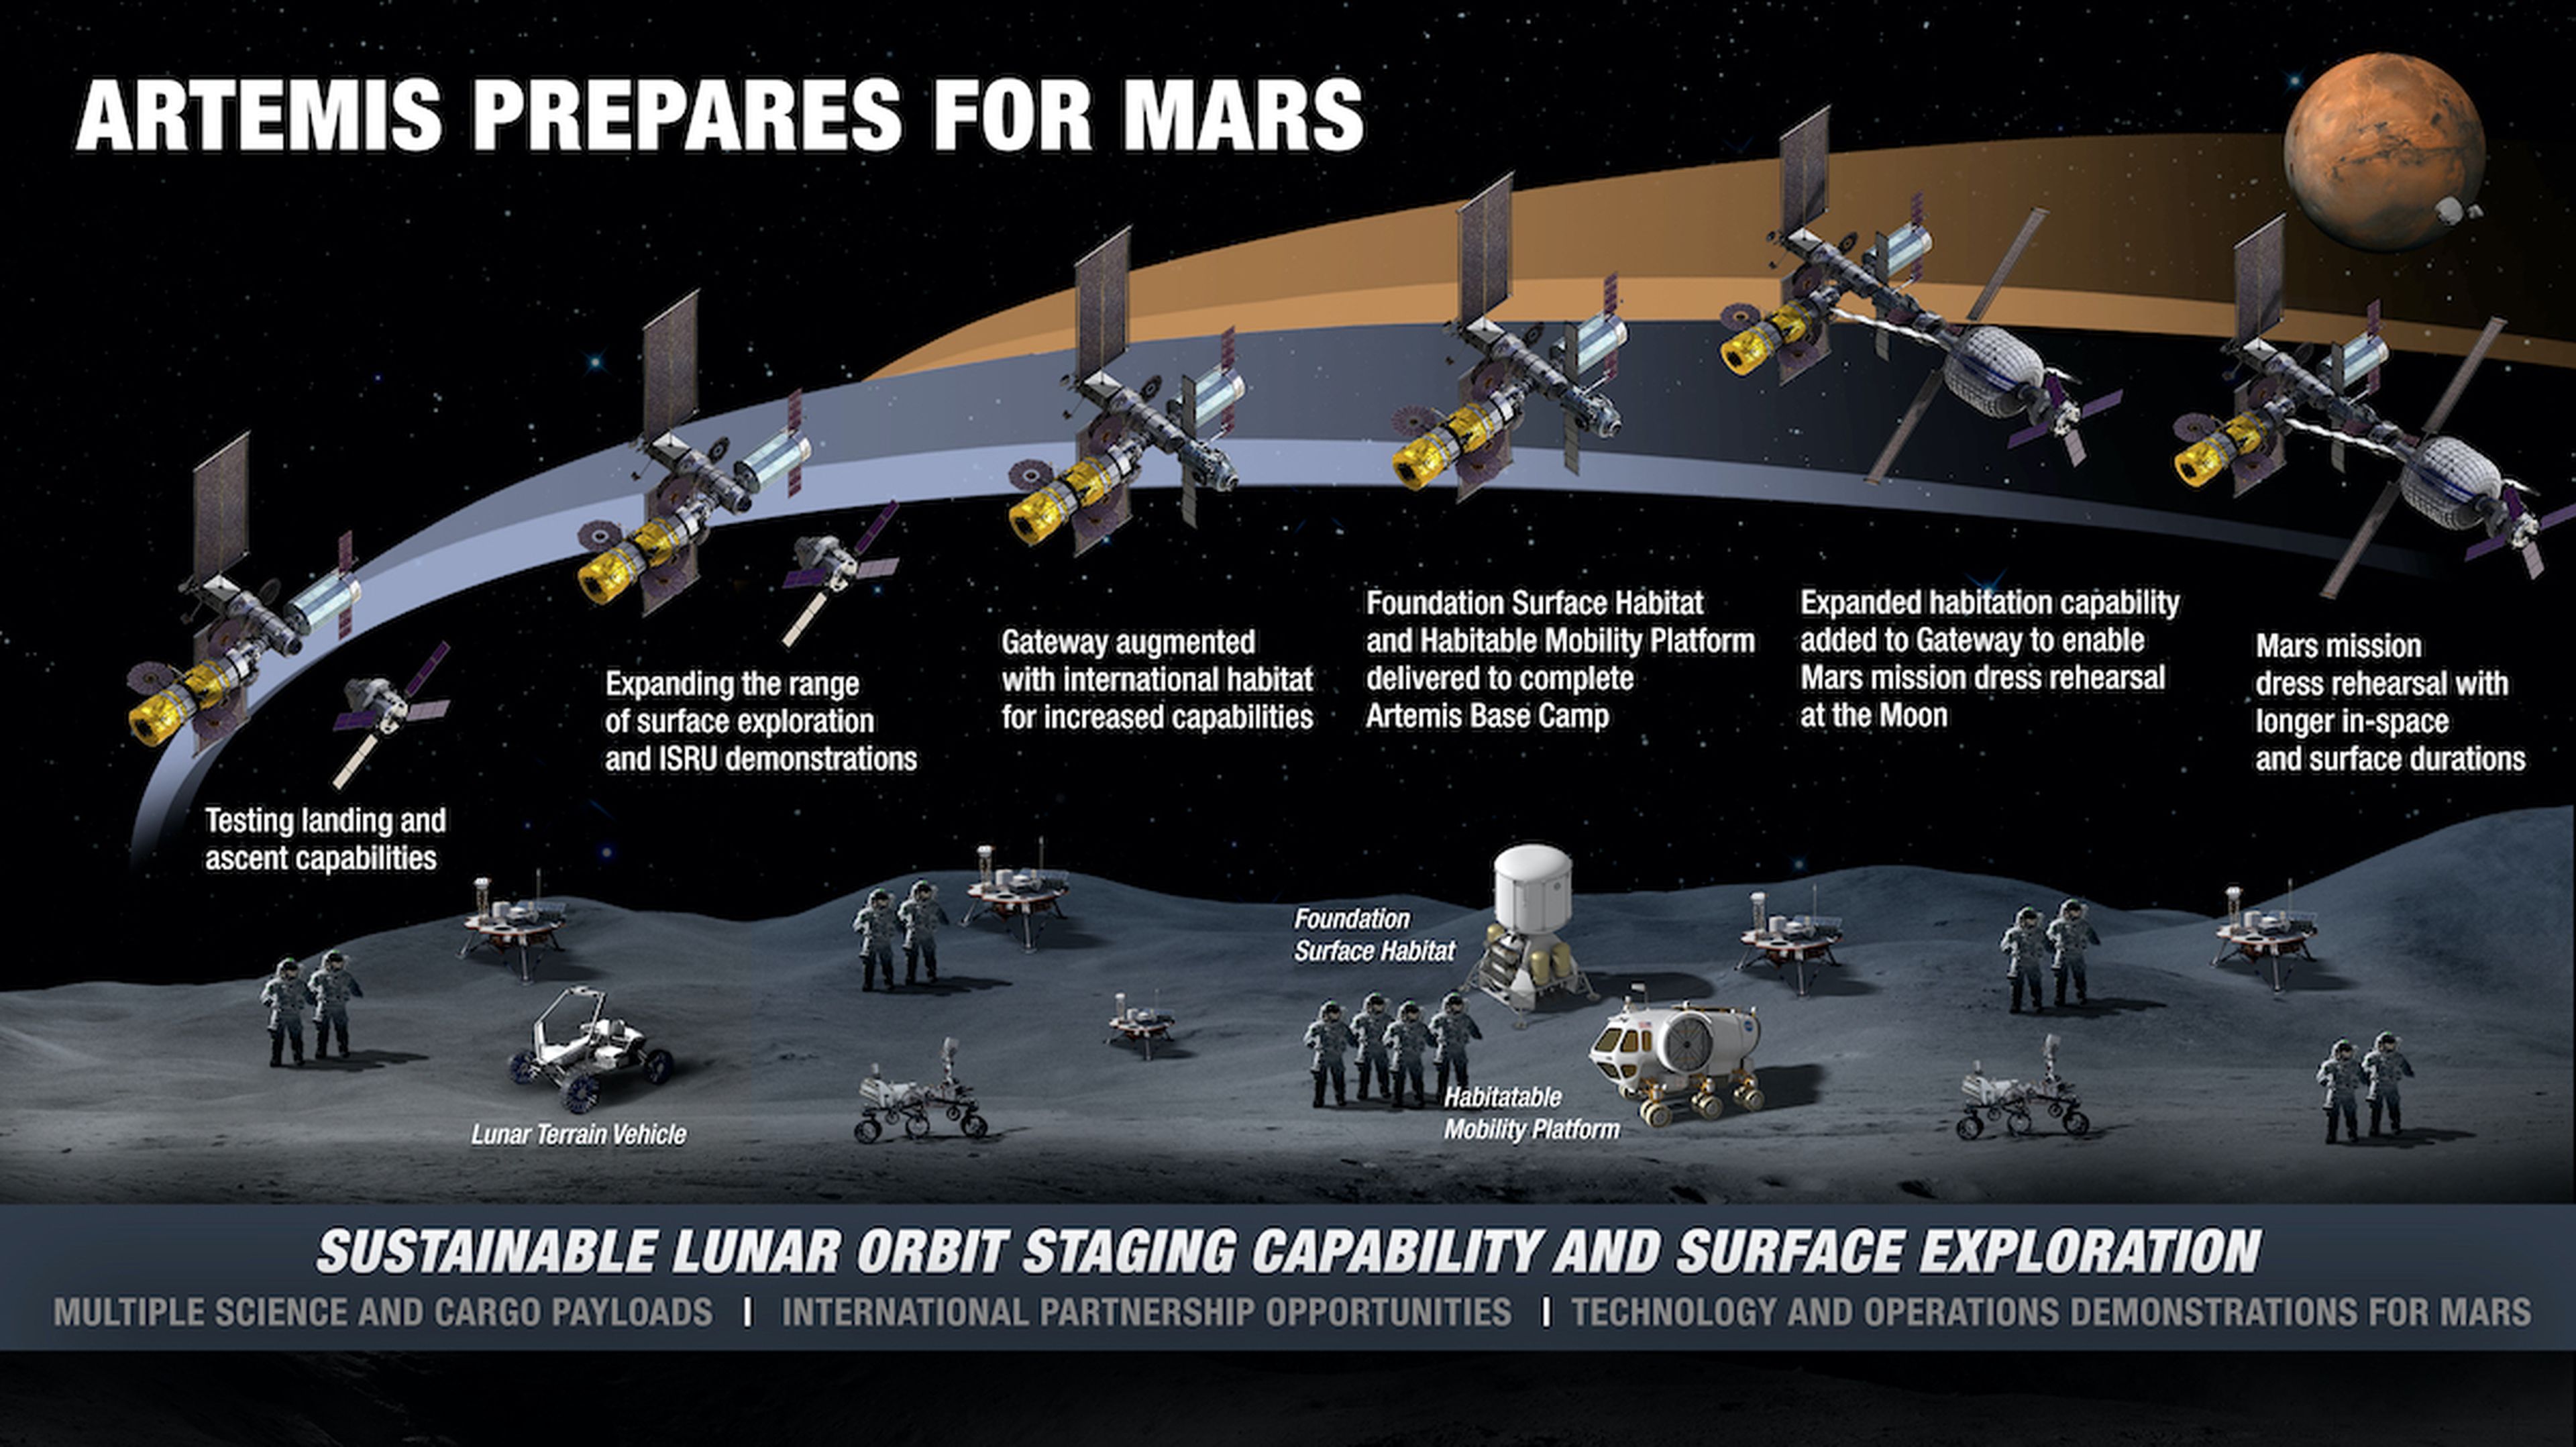 Evolución de las actividades lunares en la superficie y en órbita.